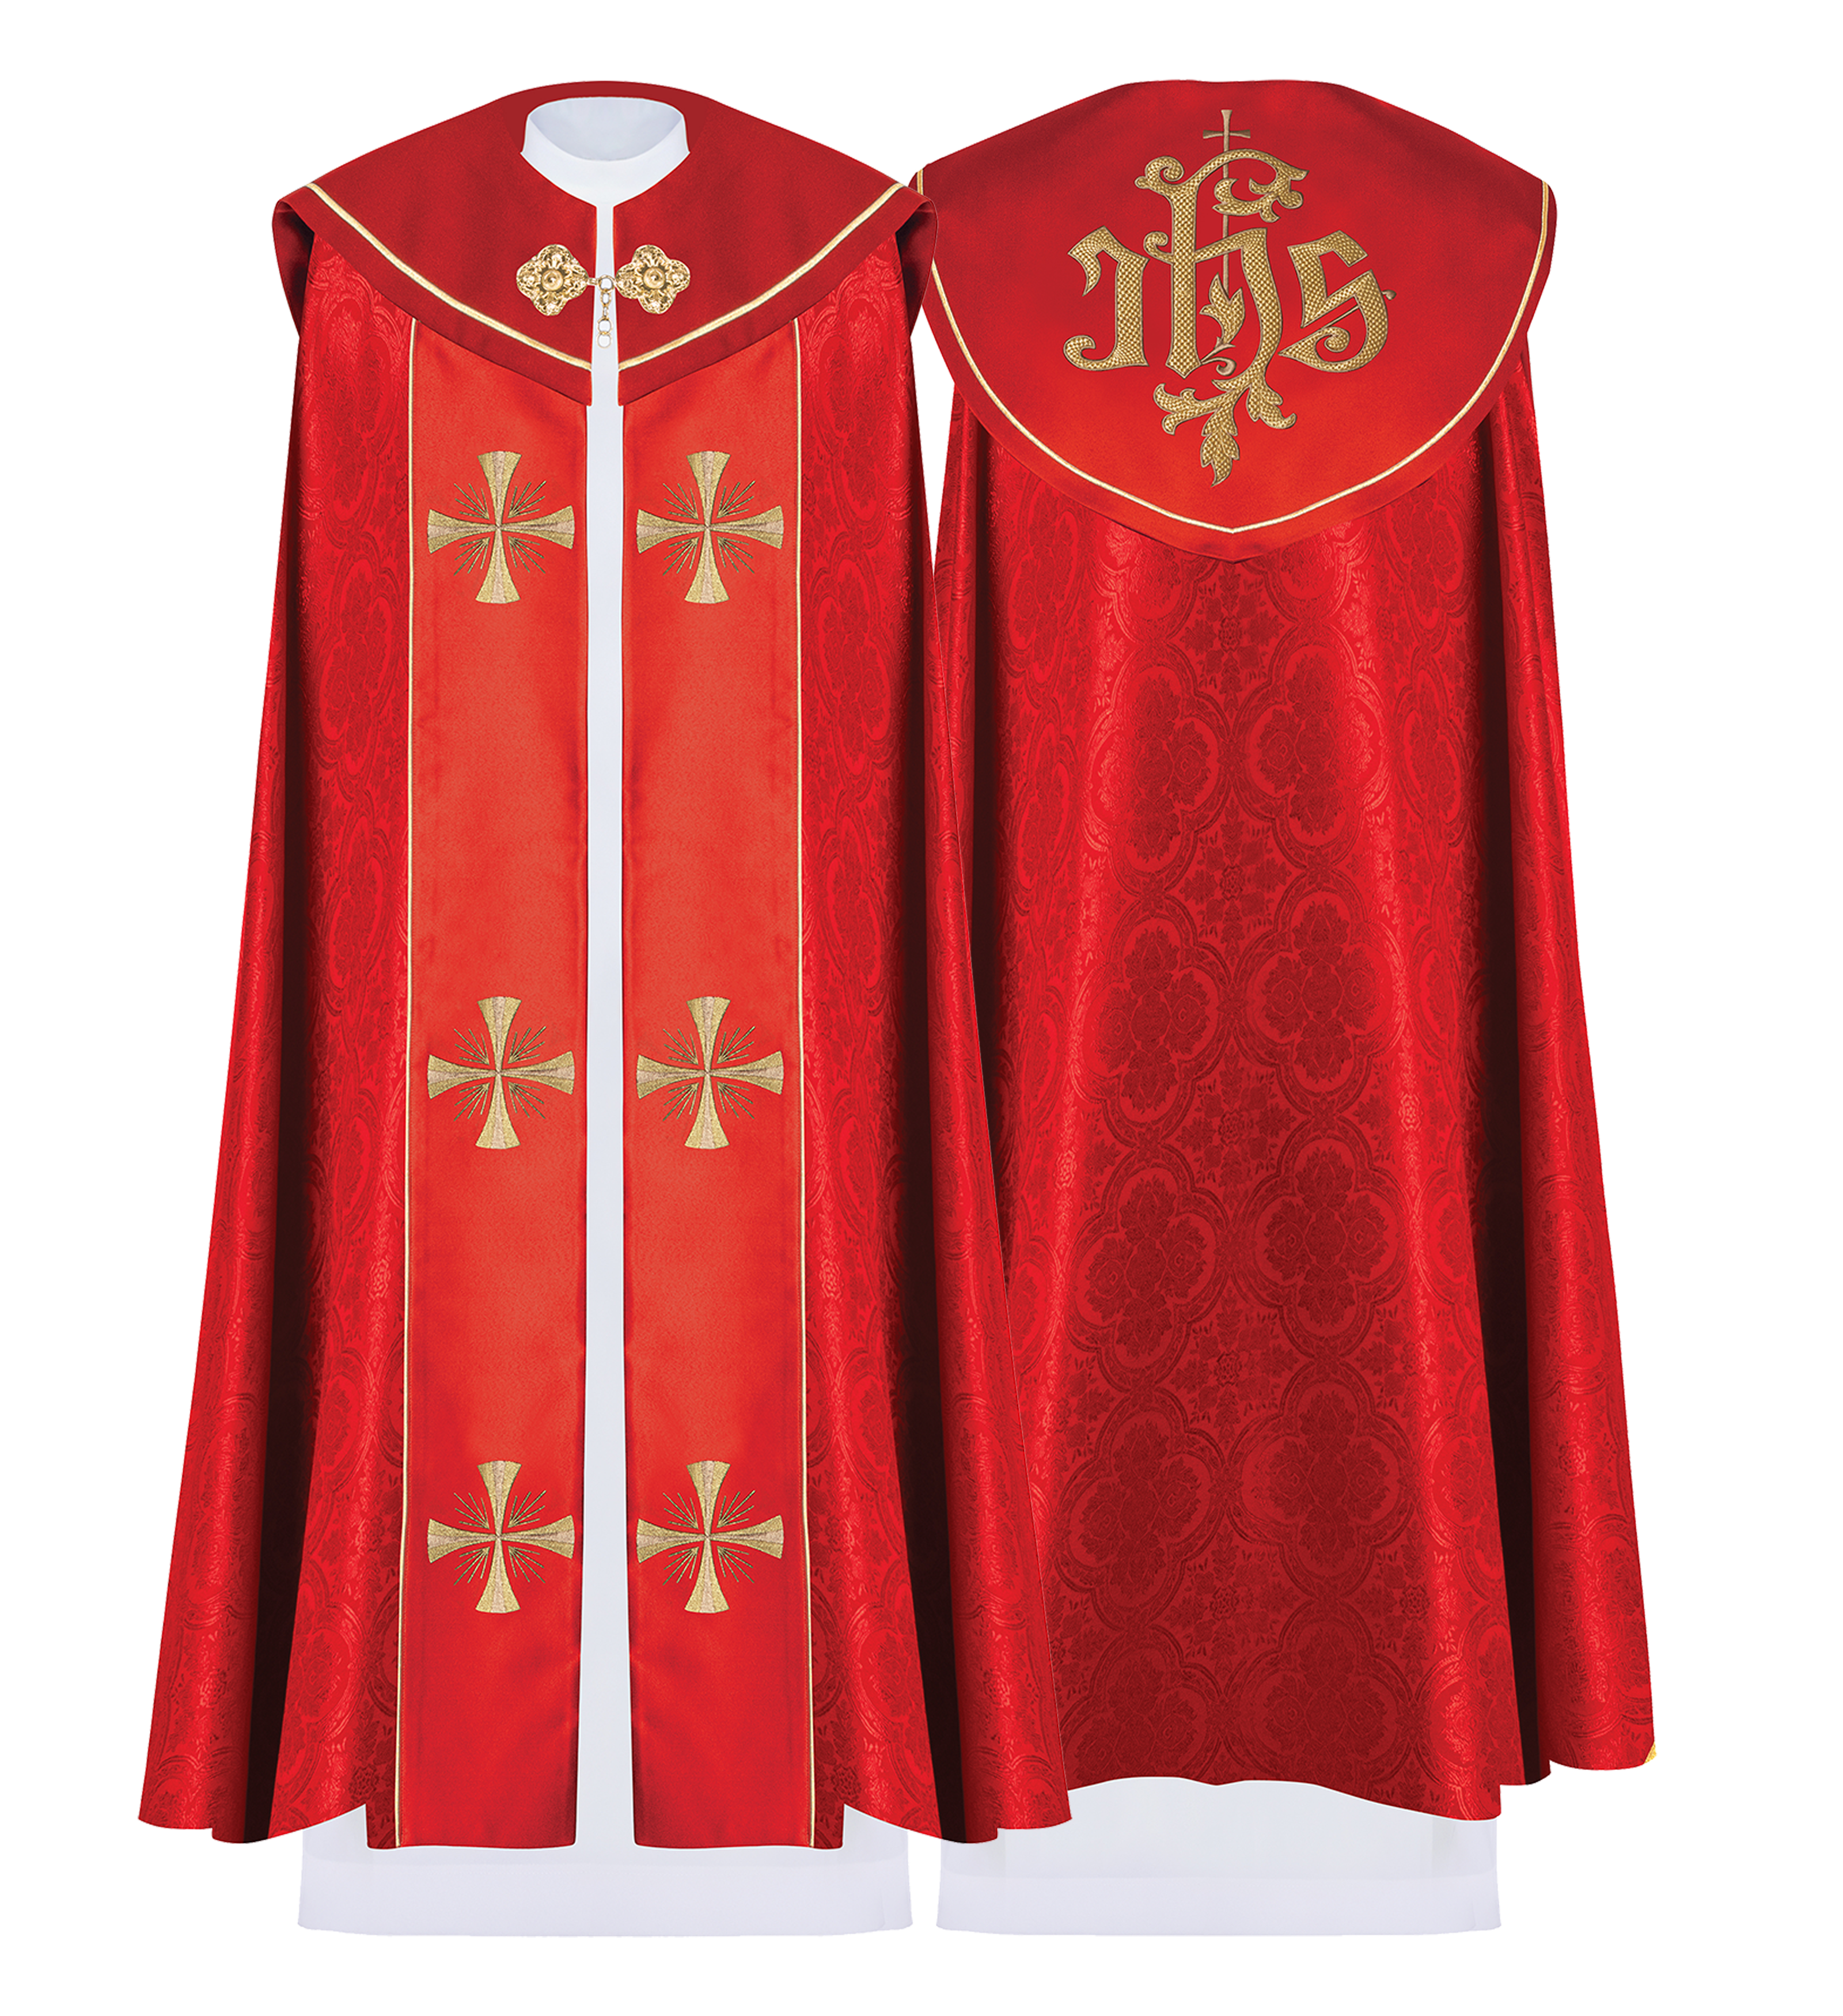 Kapa liturgiczna haftowana IHS Czerwona